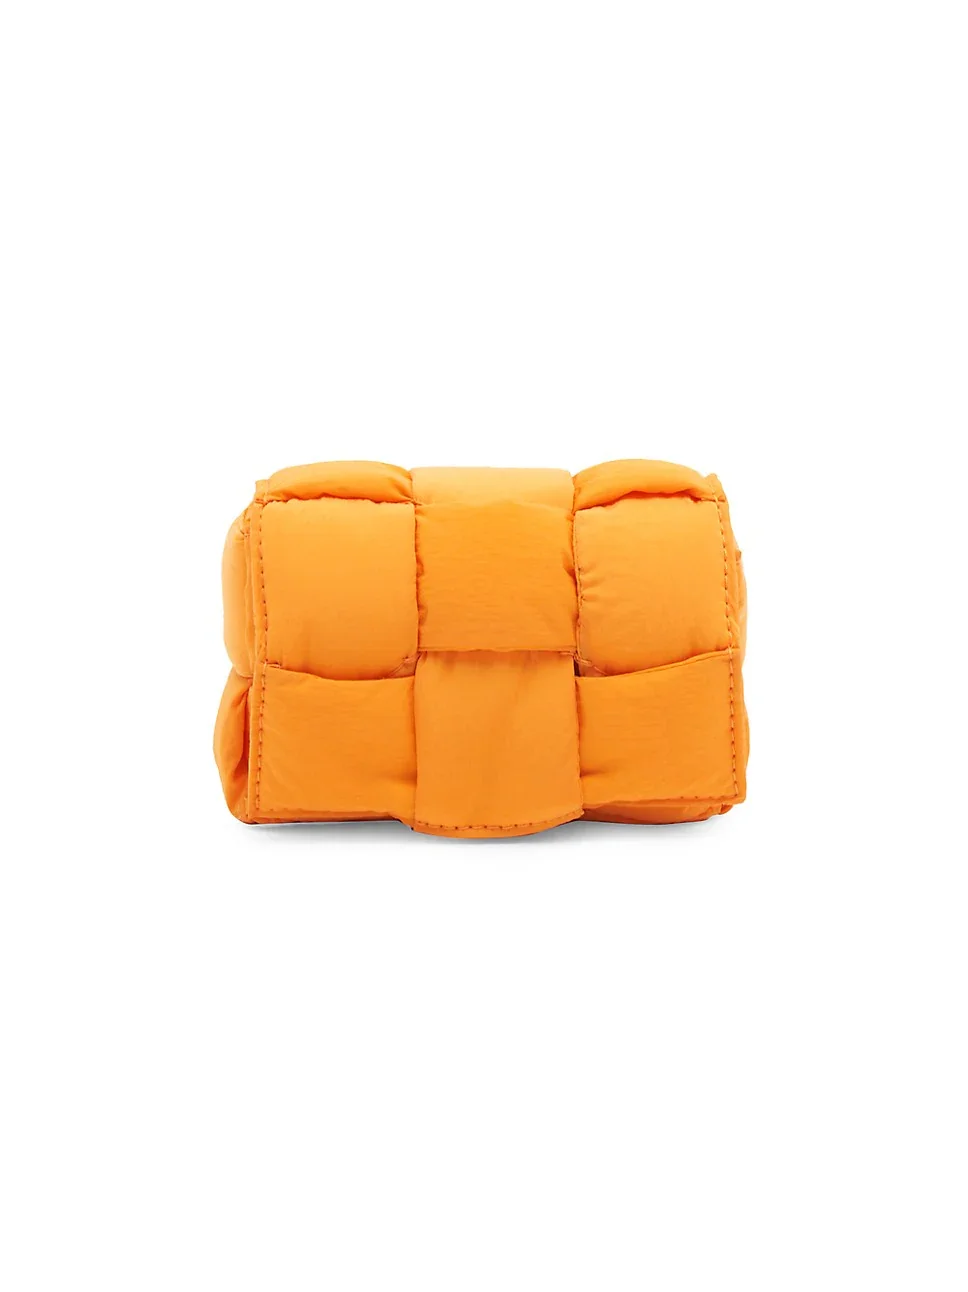 Small pillow case from Bottega Veneta Intrecciato